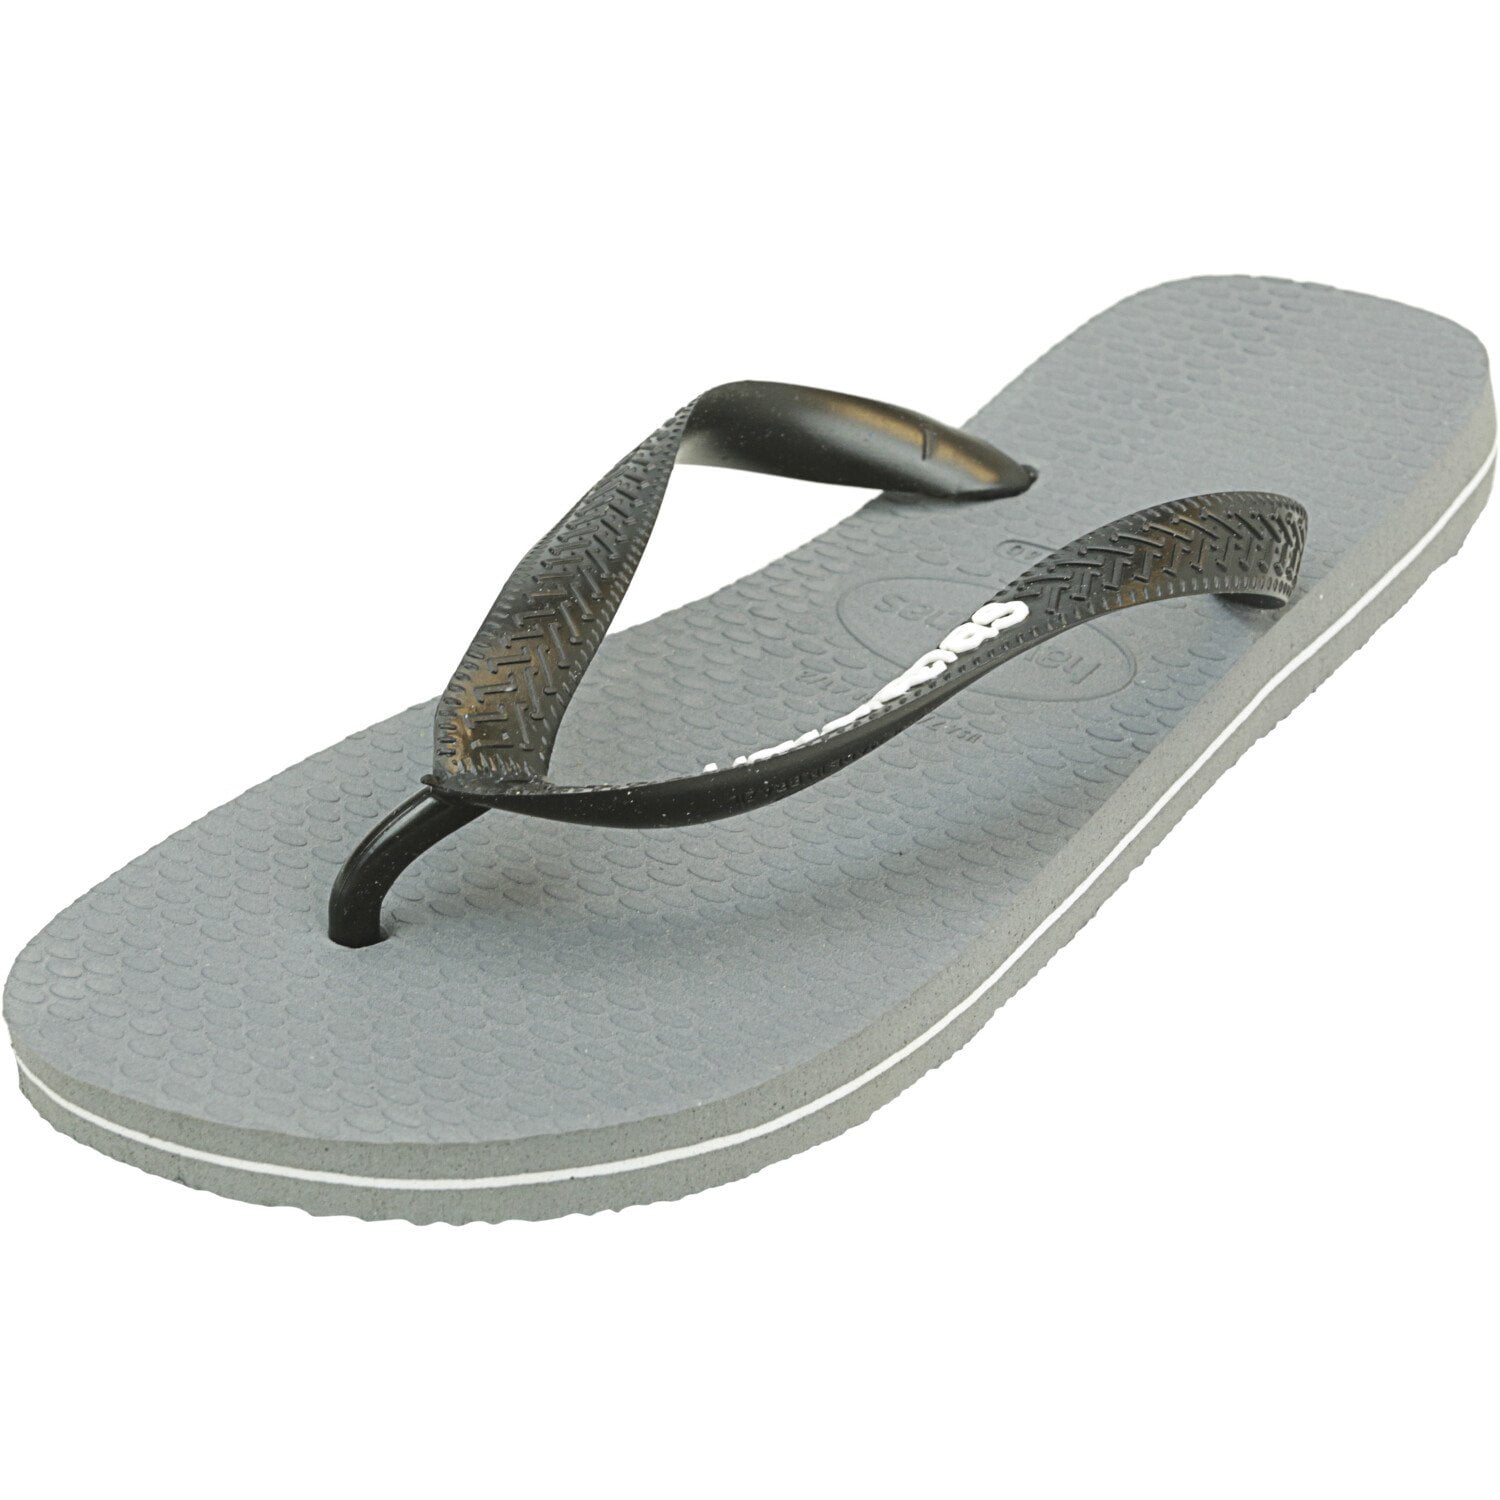 Havaianas Men's Filete Flip Flops Steel Grey / White Sandal - 8M ...